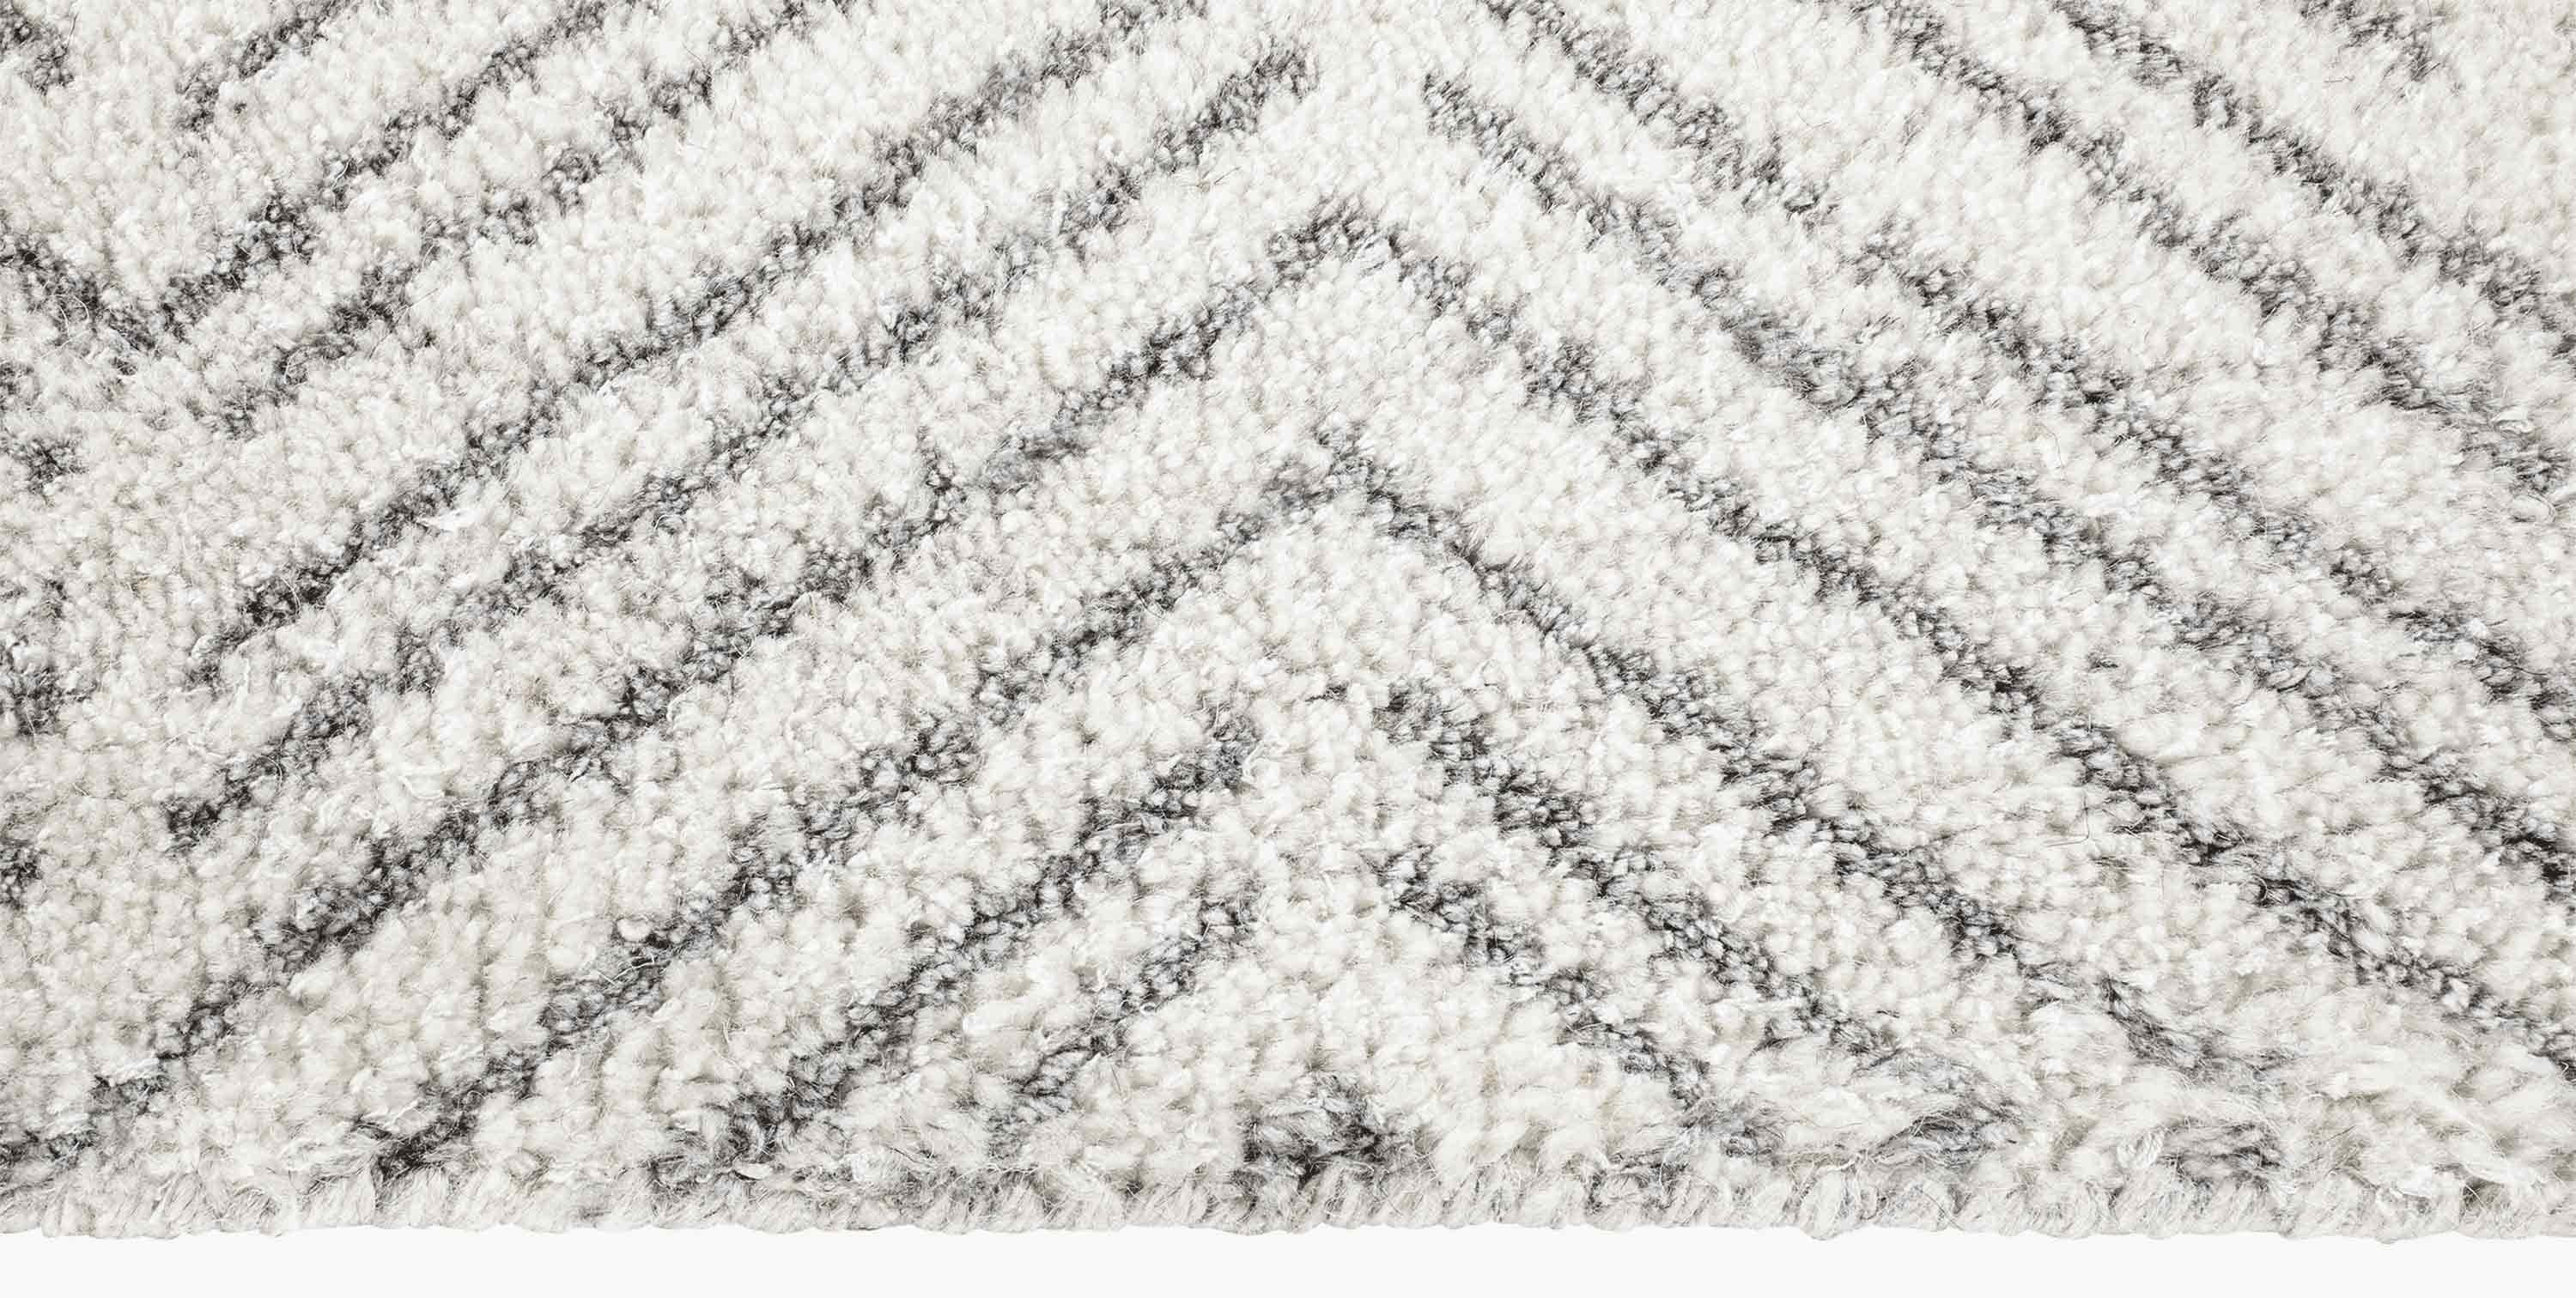 For Sale: White (White/Silver) Ben Soleimani Alia Rug– Hand-woven Chevron Wool + Viscose Black/Gray 12'x15' 3